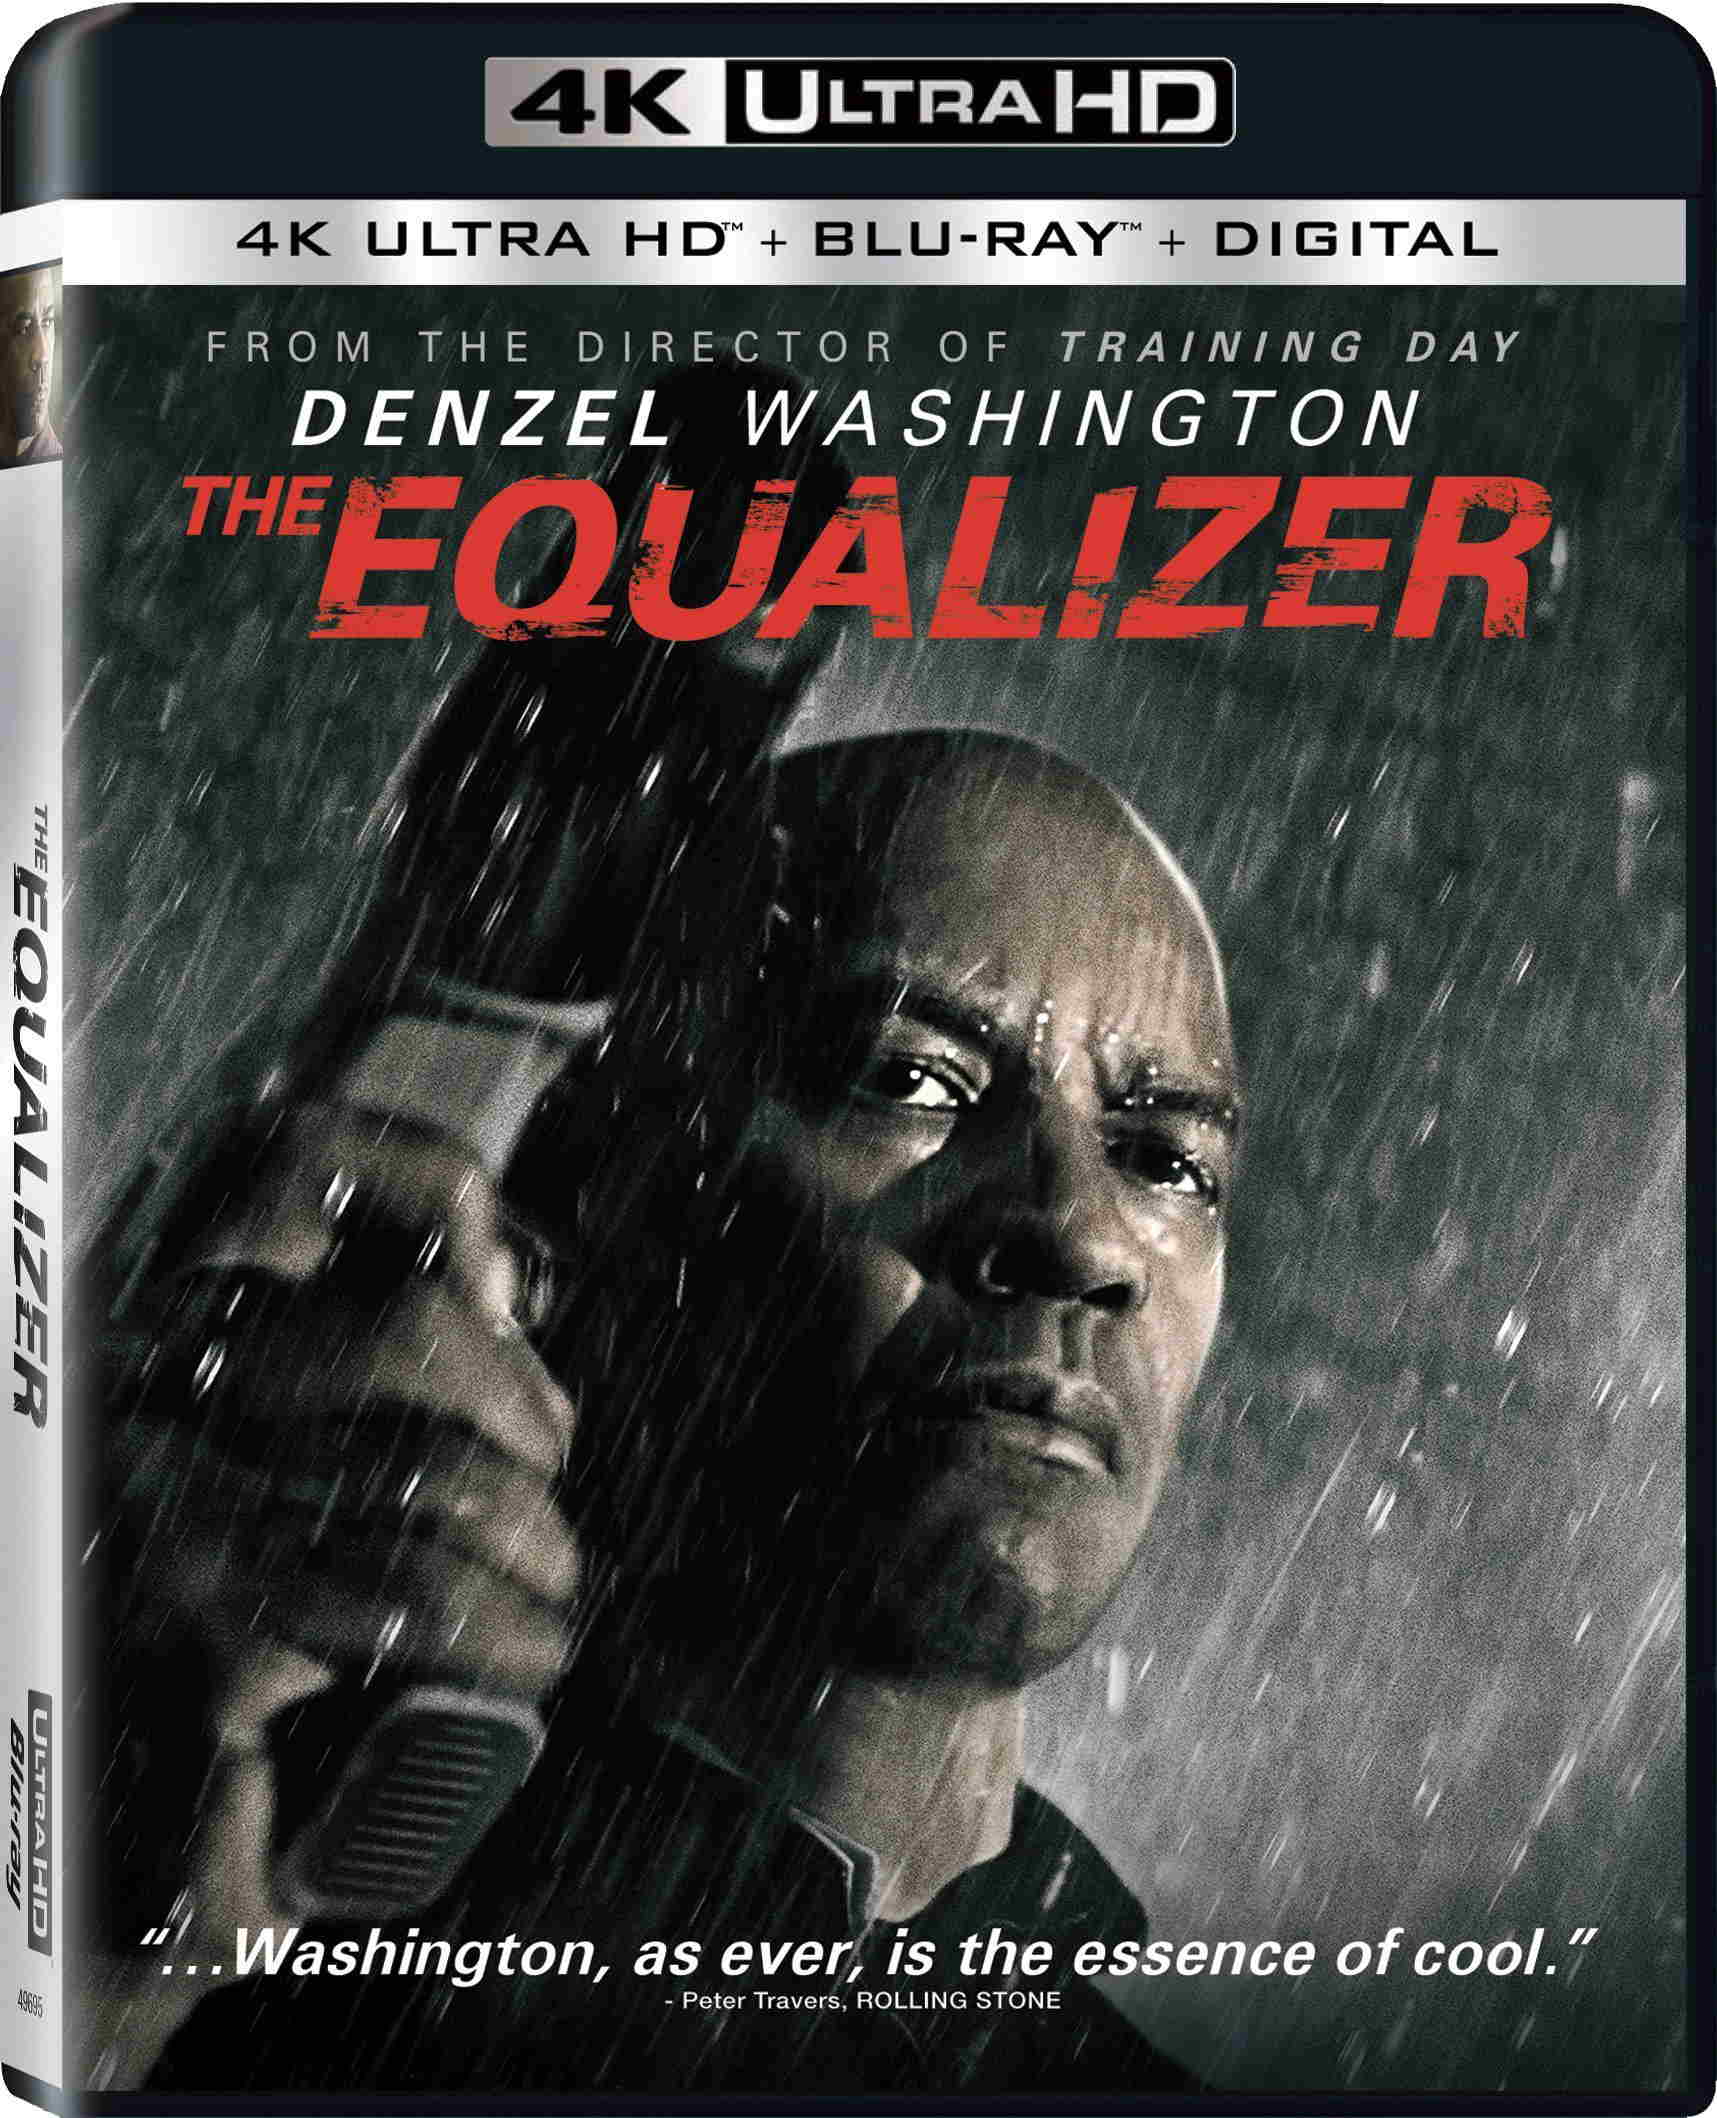 Stiahni si UHD Filmy Equalizer  / The Equalizer (2014)(4K Ultra HD)(CZ/EN)[HEVC 2160p BDRip HDR10] = CSFD 74%